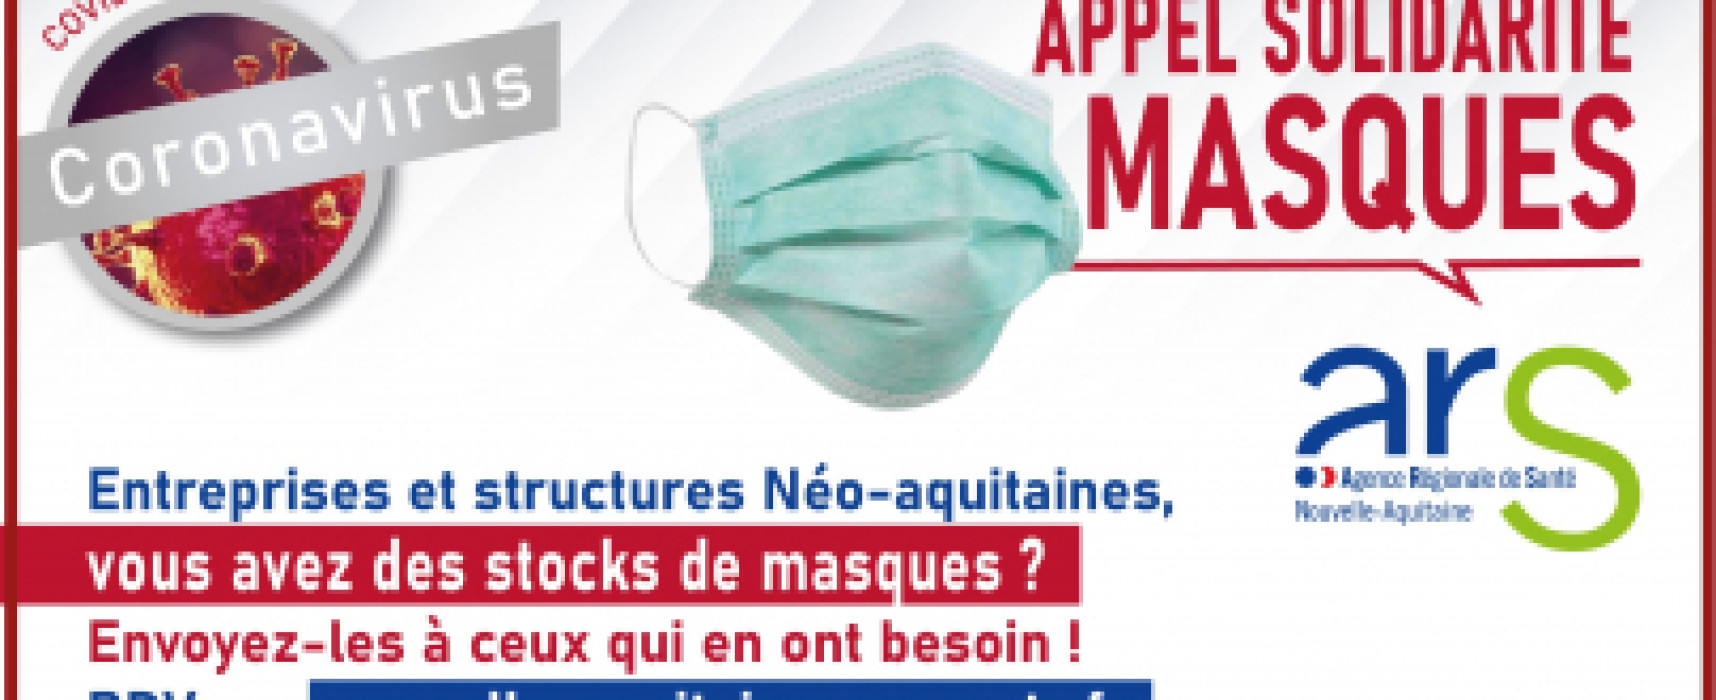 L’ARS lance un appel de solidarité auprès des entreprises pour collecter des stocks de masques chirurgicaux